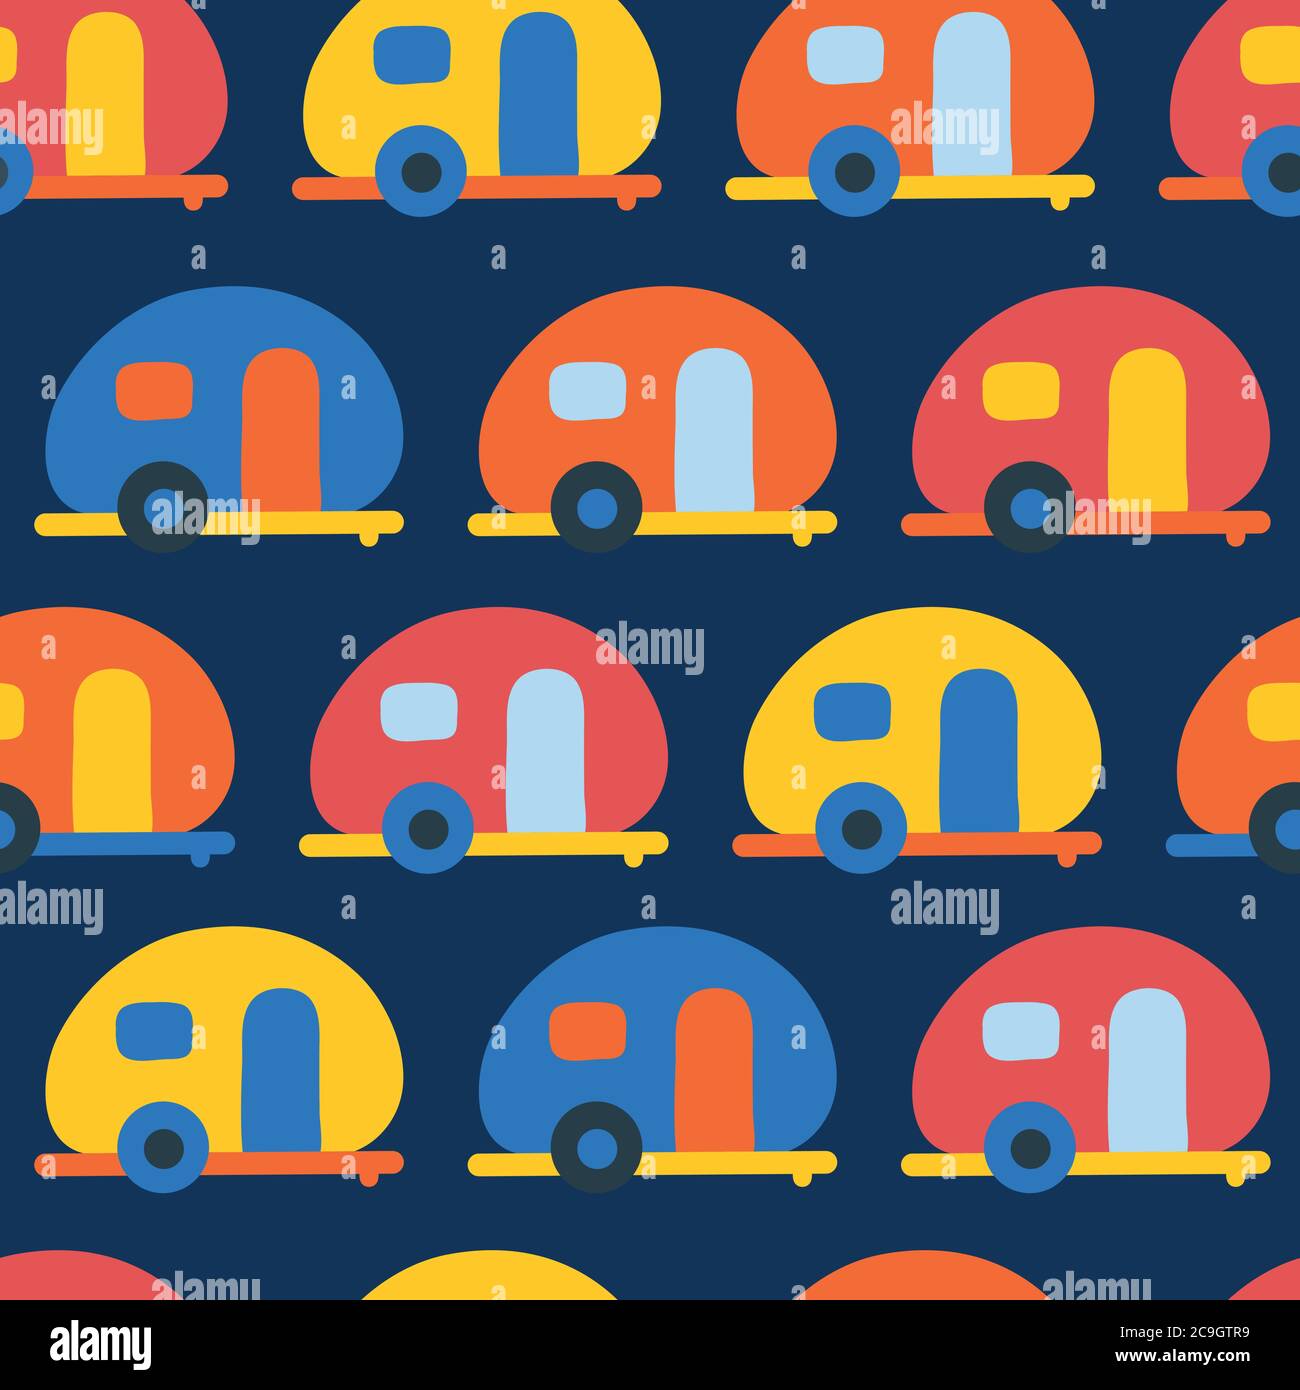 Camping Wohnwagen nahtlose Vektor-Muster. Retro Camper Vans rot, blau, gelb,  orange nahtlose Vektor-Hintergrund. Skandinavischer, flacher Stil  Stock-Vektorgrafik - Alamy